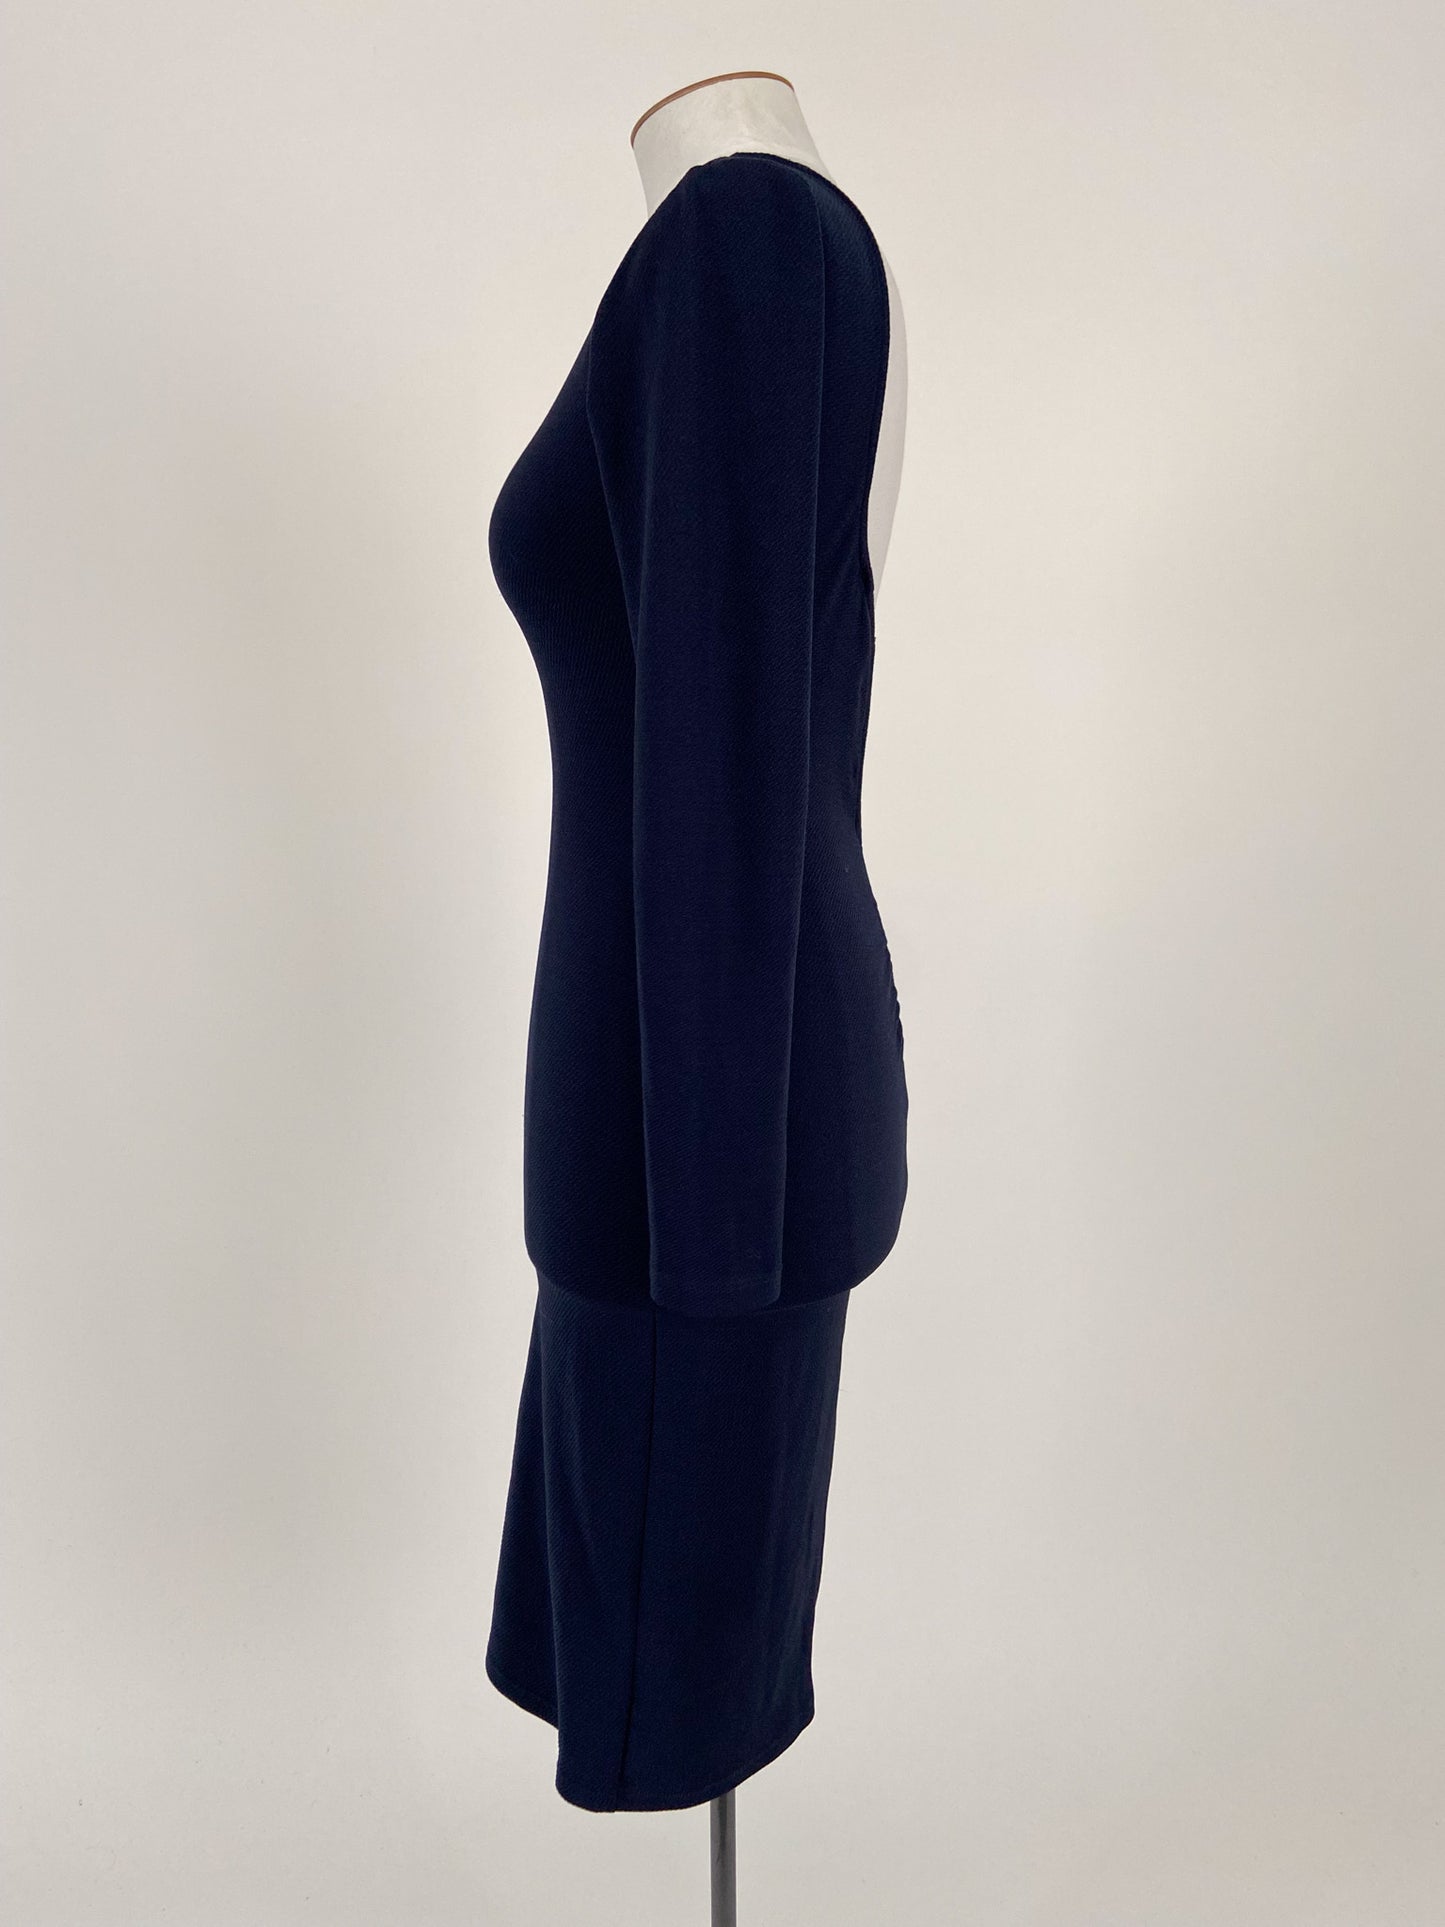 Paradisco | Navy Formal/Workwear Dress | Size 10